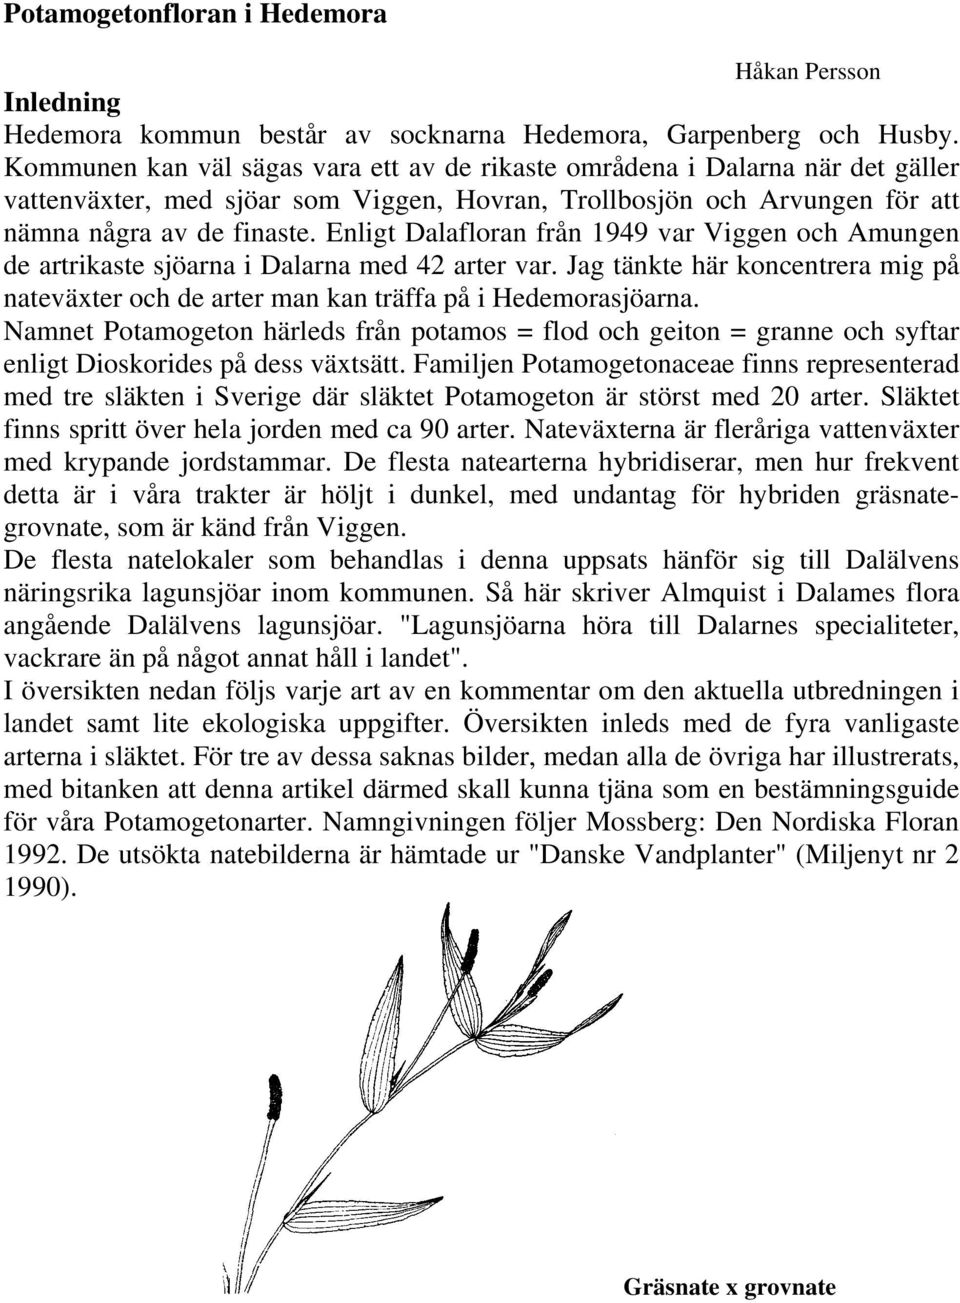 Enligt Dalafloran från 1949 var Viggen och Amungen de artrikaste sjöarna i Dalarna med 42 arter var. Jag tänkte här koncentrera mig på nateväxter och de arter man kan träffa på i Hedemorasjöarna.